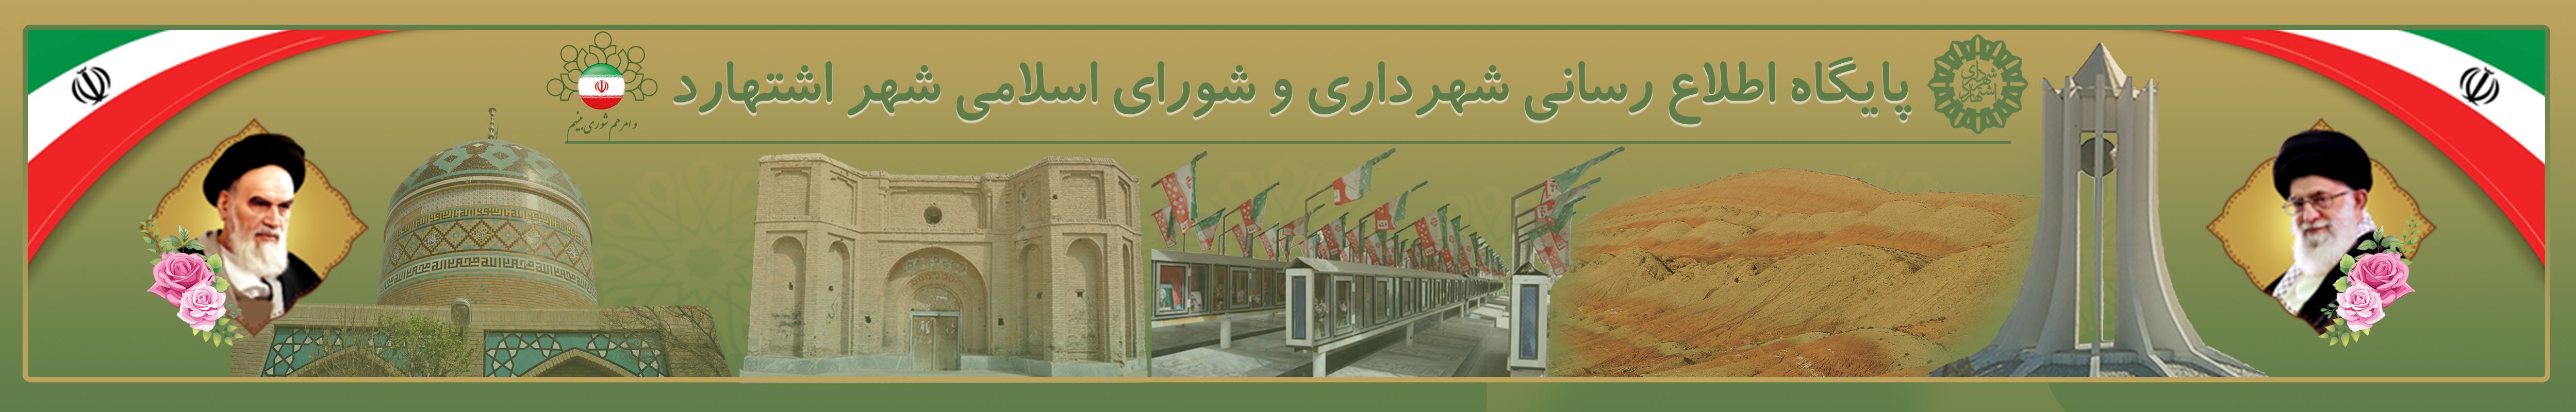 شهرداری و شورای اسلامی شهر اشتهارد